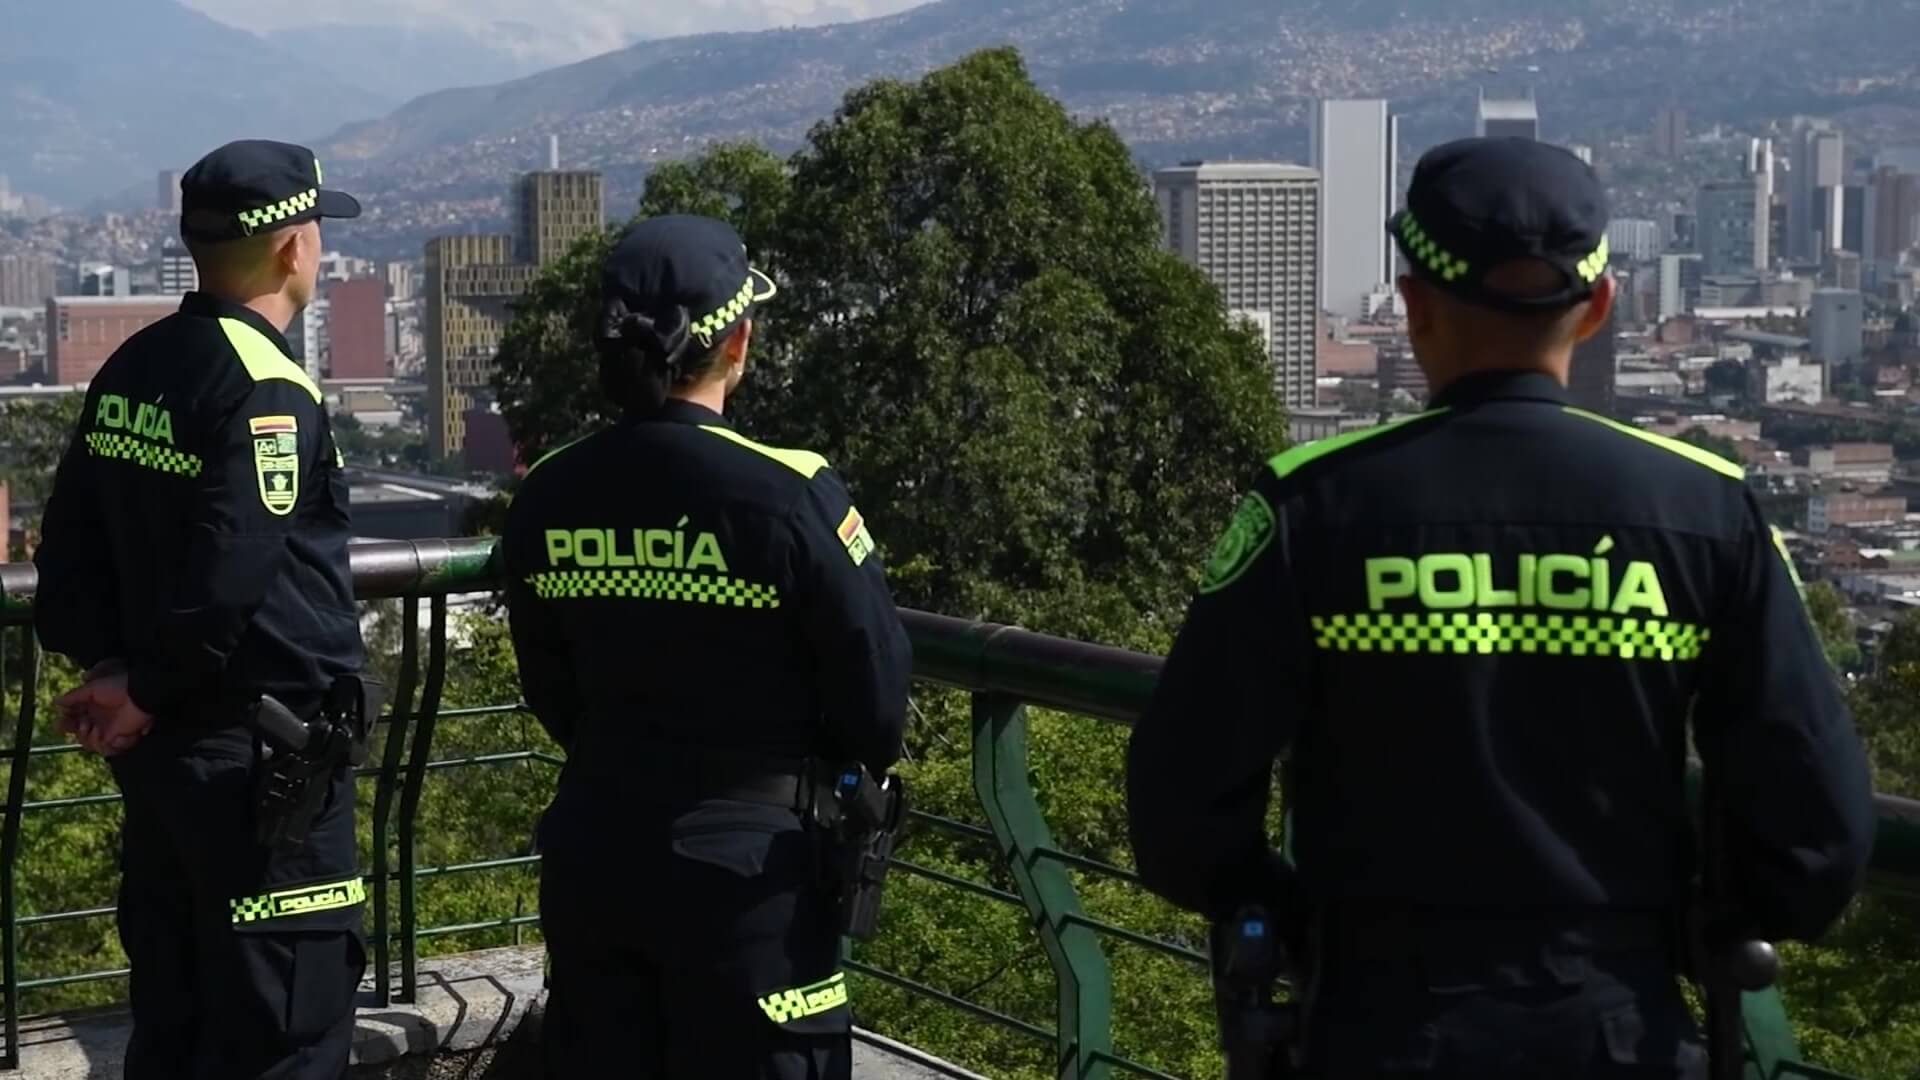 Policías bilingües en sitios públicos